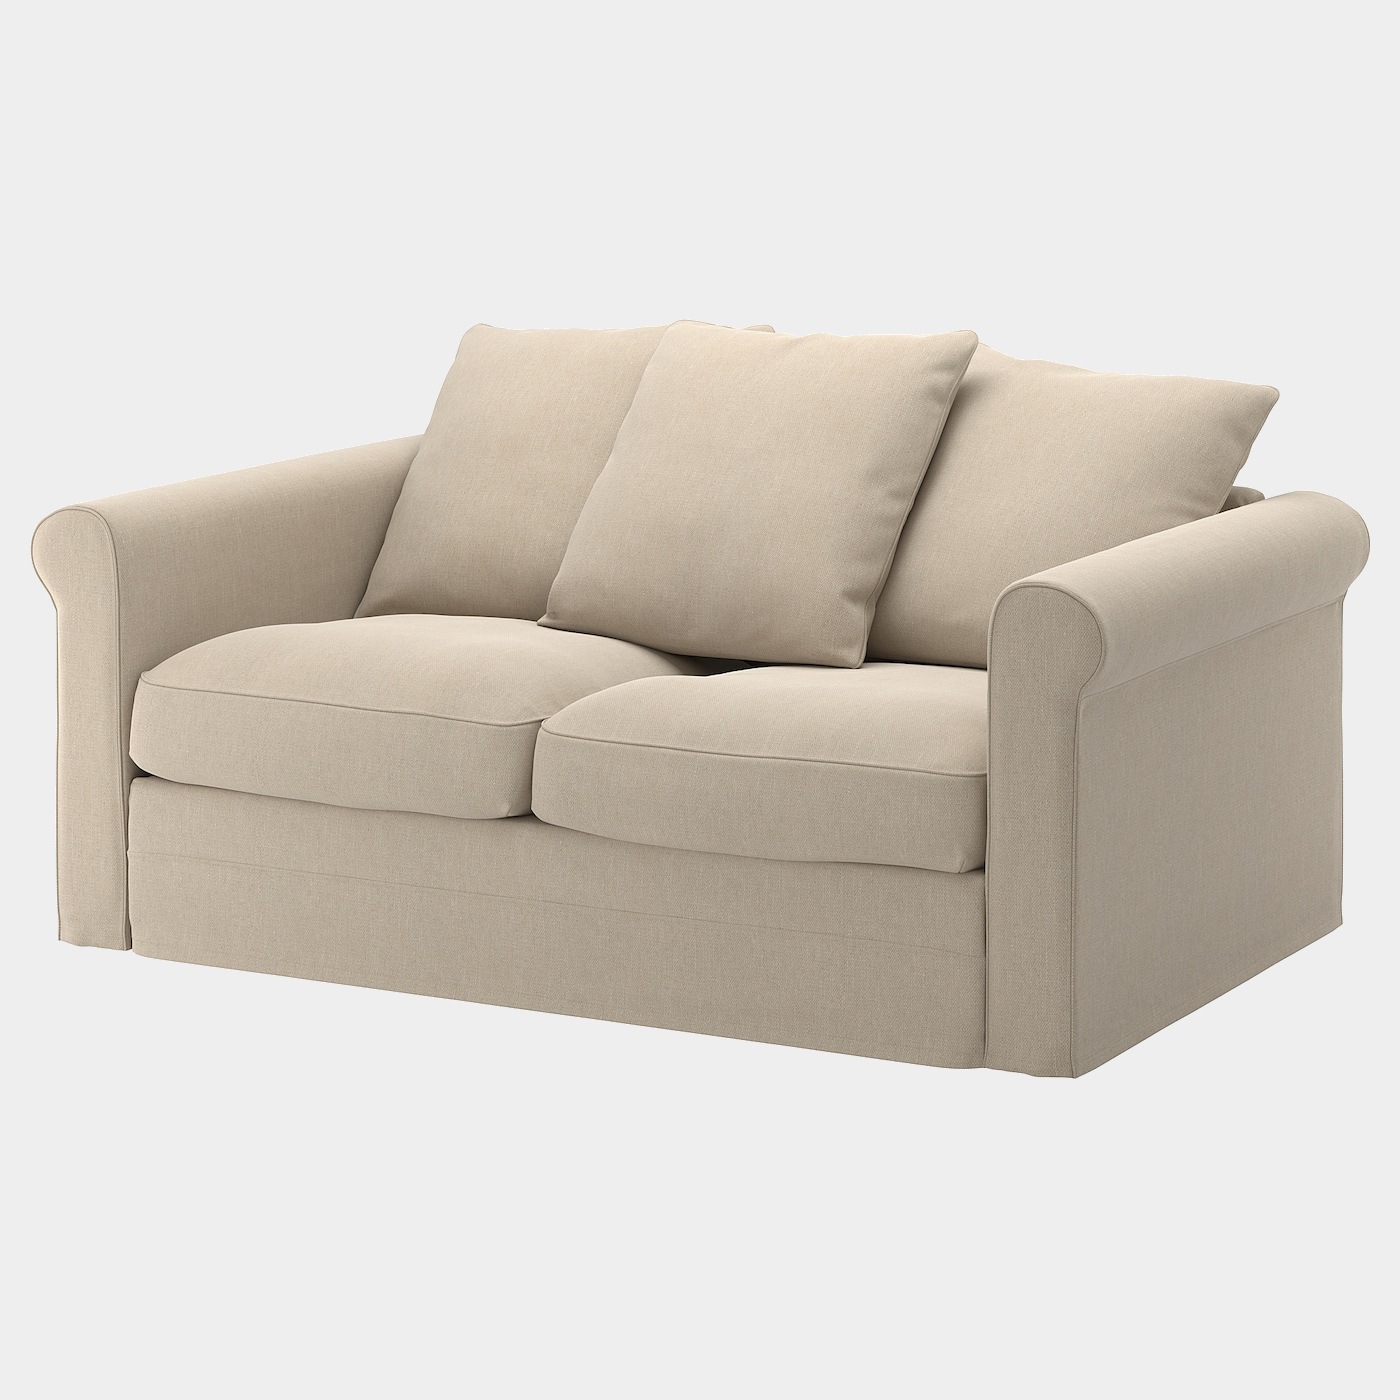 GRÖNLID 2er-Sofa  -  - Möbel Ideen für dein Zuhause von Home Trends. Möbel Trends von Social Media Influencer für dein Skandi Zuhause.